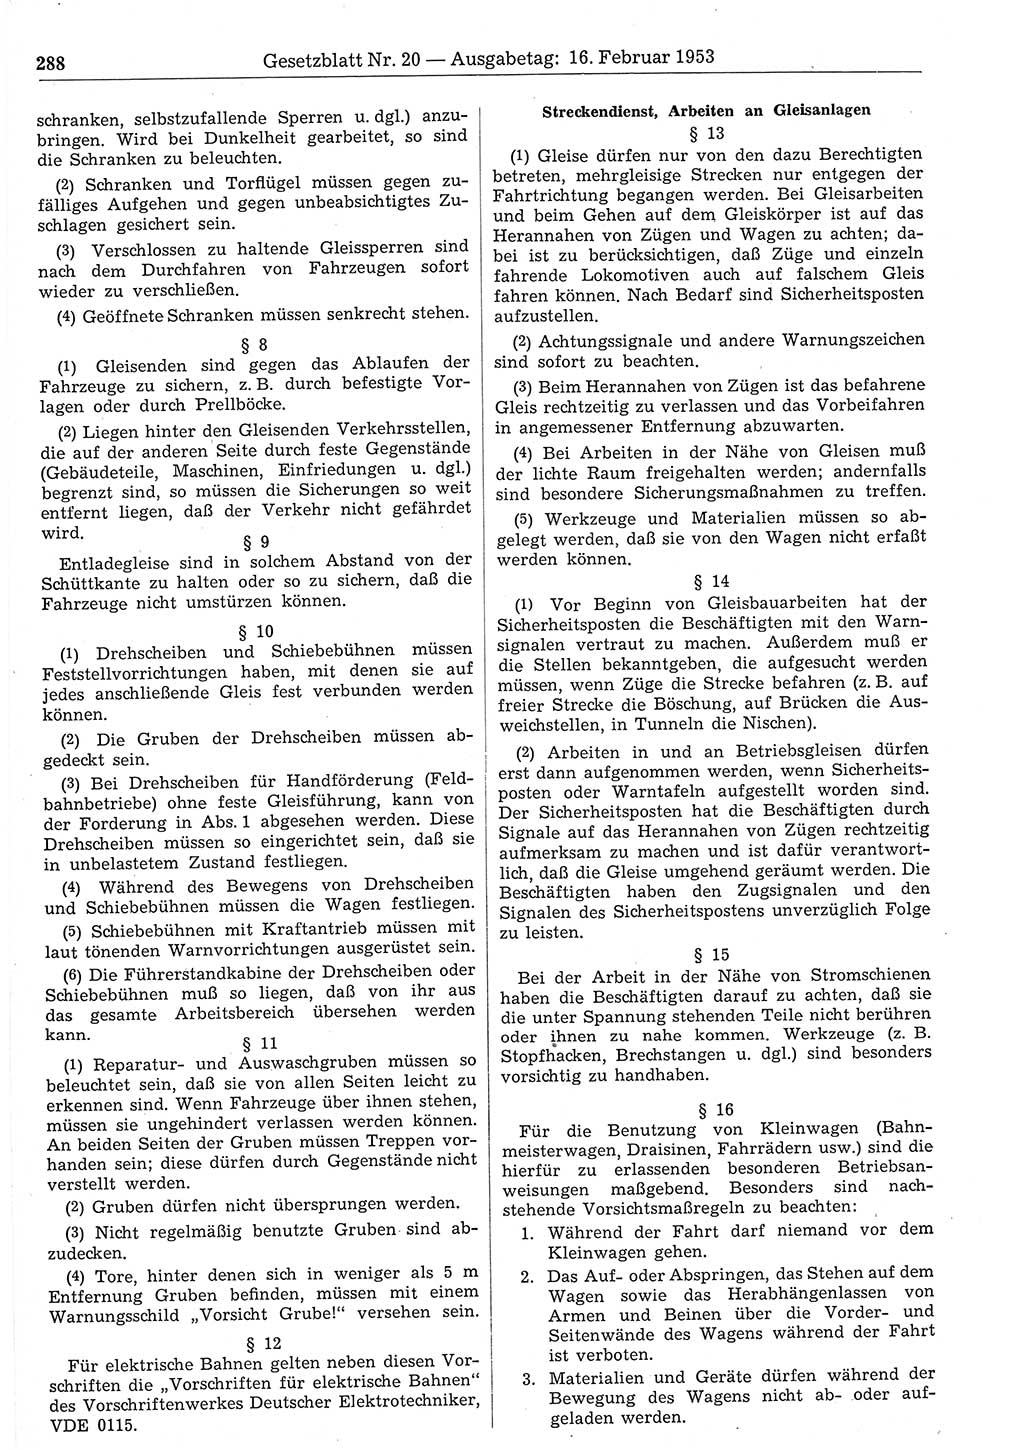 Gesetzblatt (GBl.) der Deutschen Demokratischen Republik (DDR) 1953, Seite 288 (GBl. DDR 1953, S. 288)